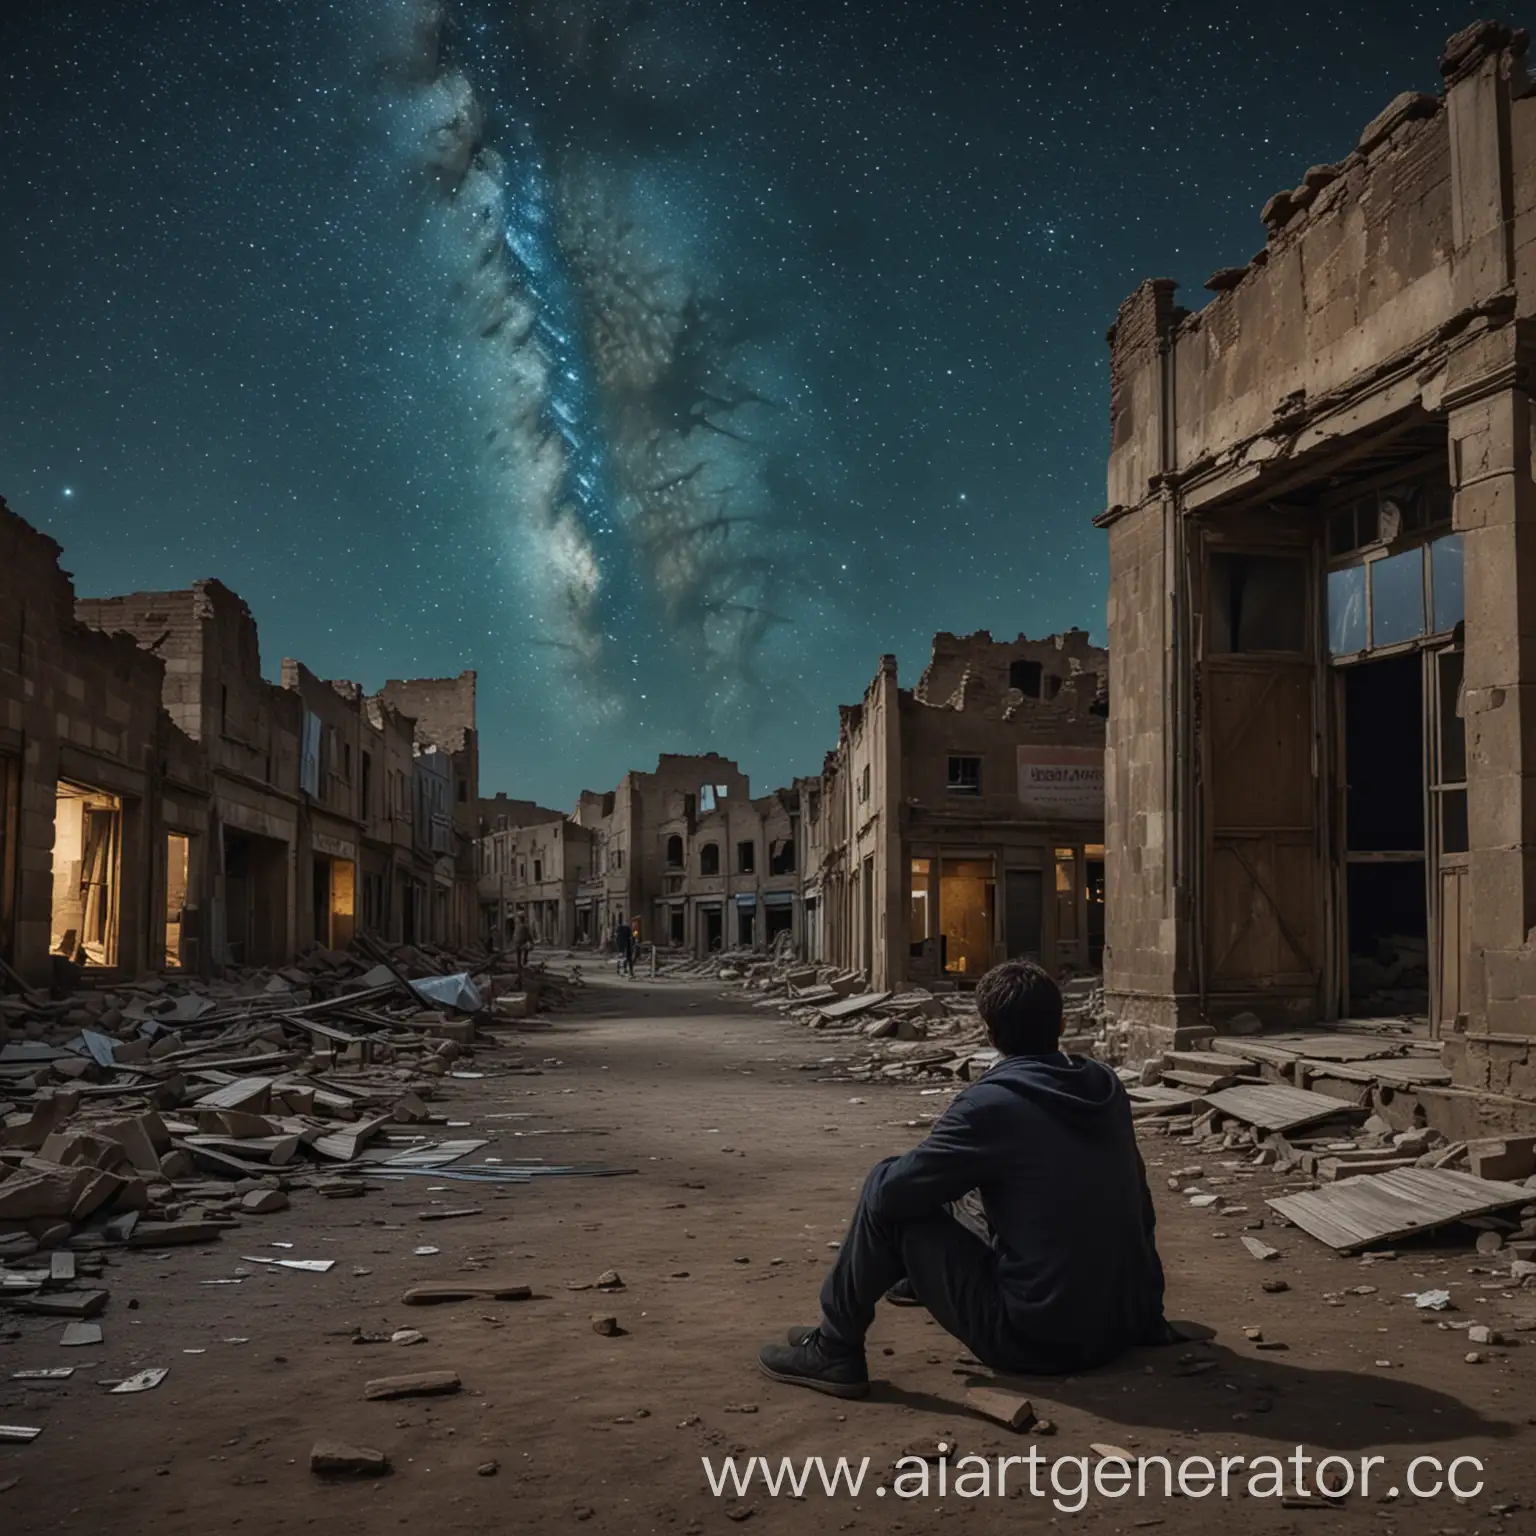 Разрушенный город в далике, человек сидит около магазина, звездное ночное небо.
